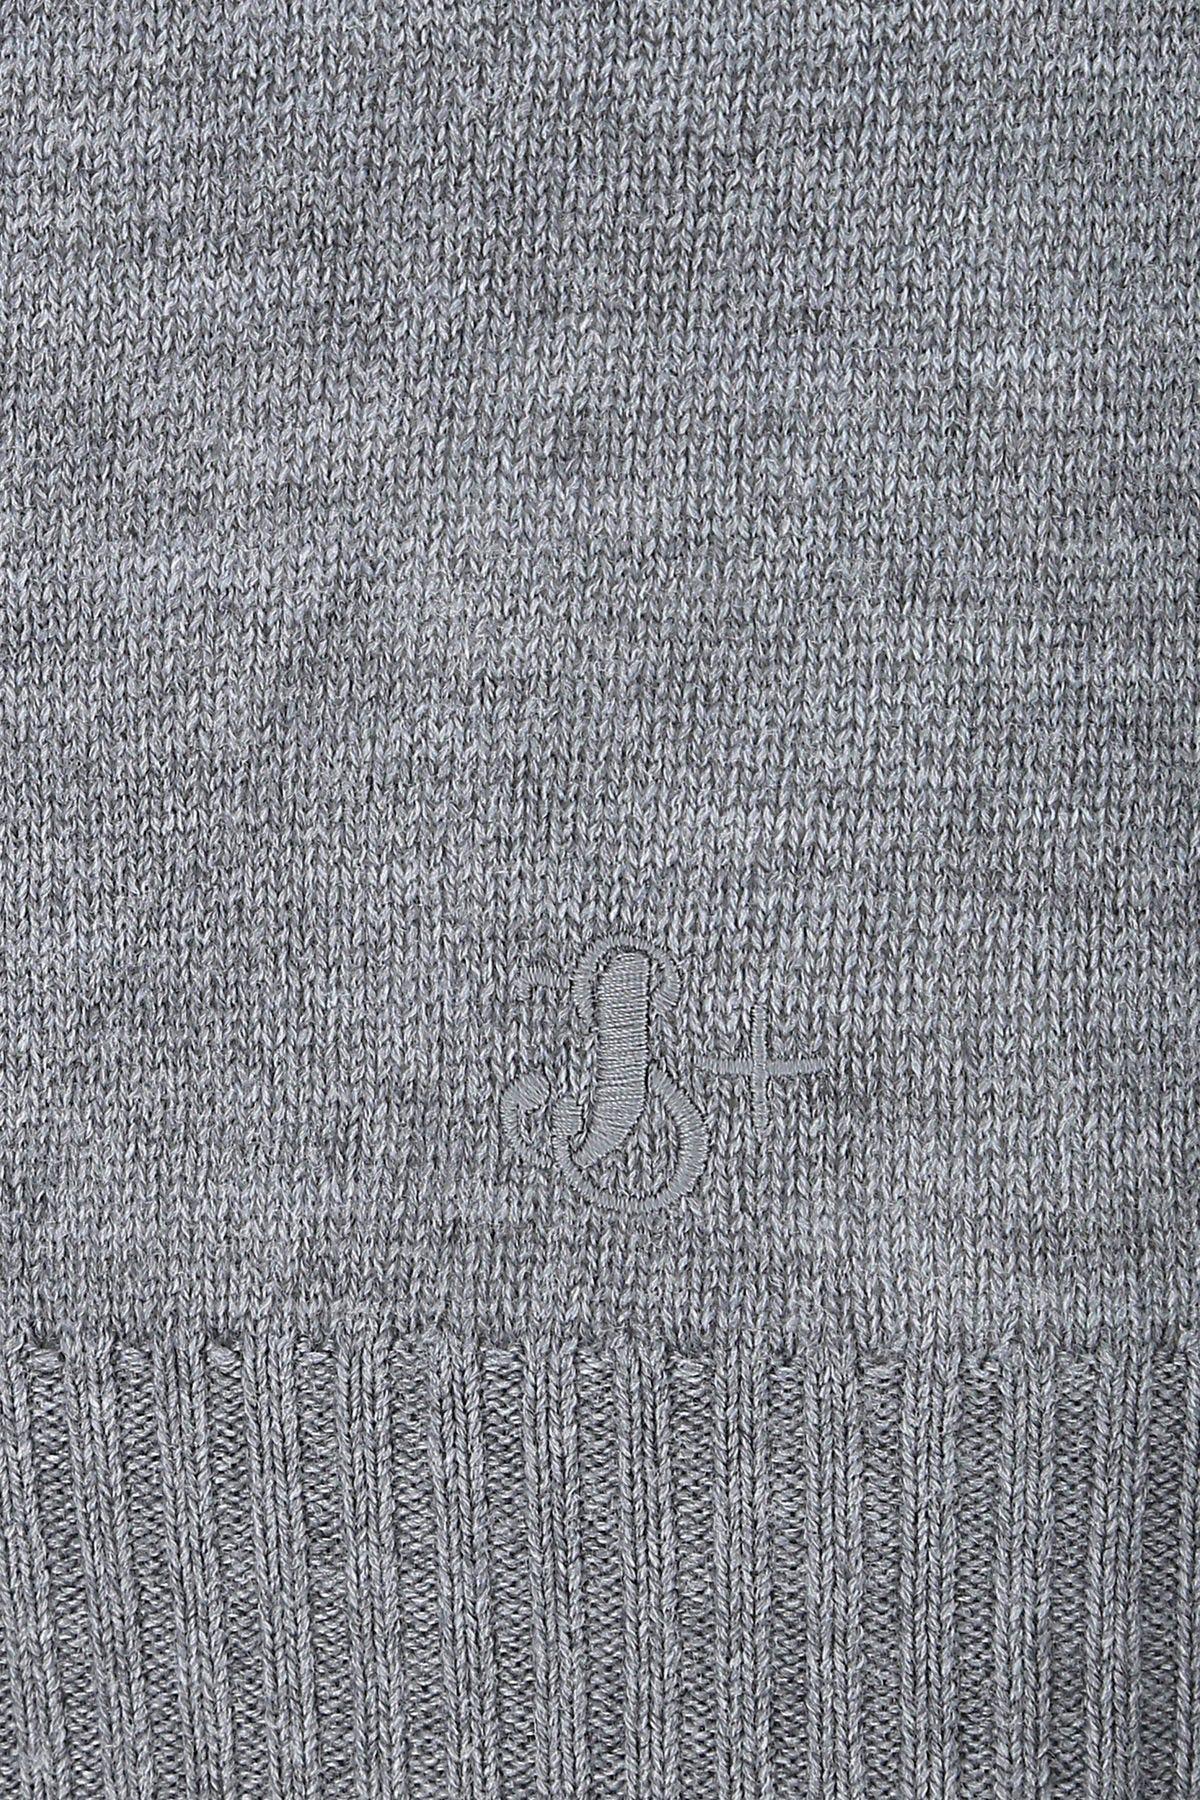 Shop Jil Sander Grey Wool Sweater